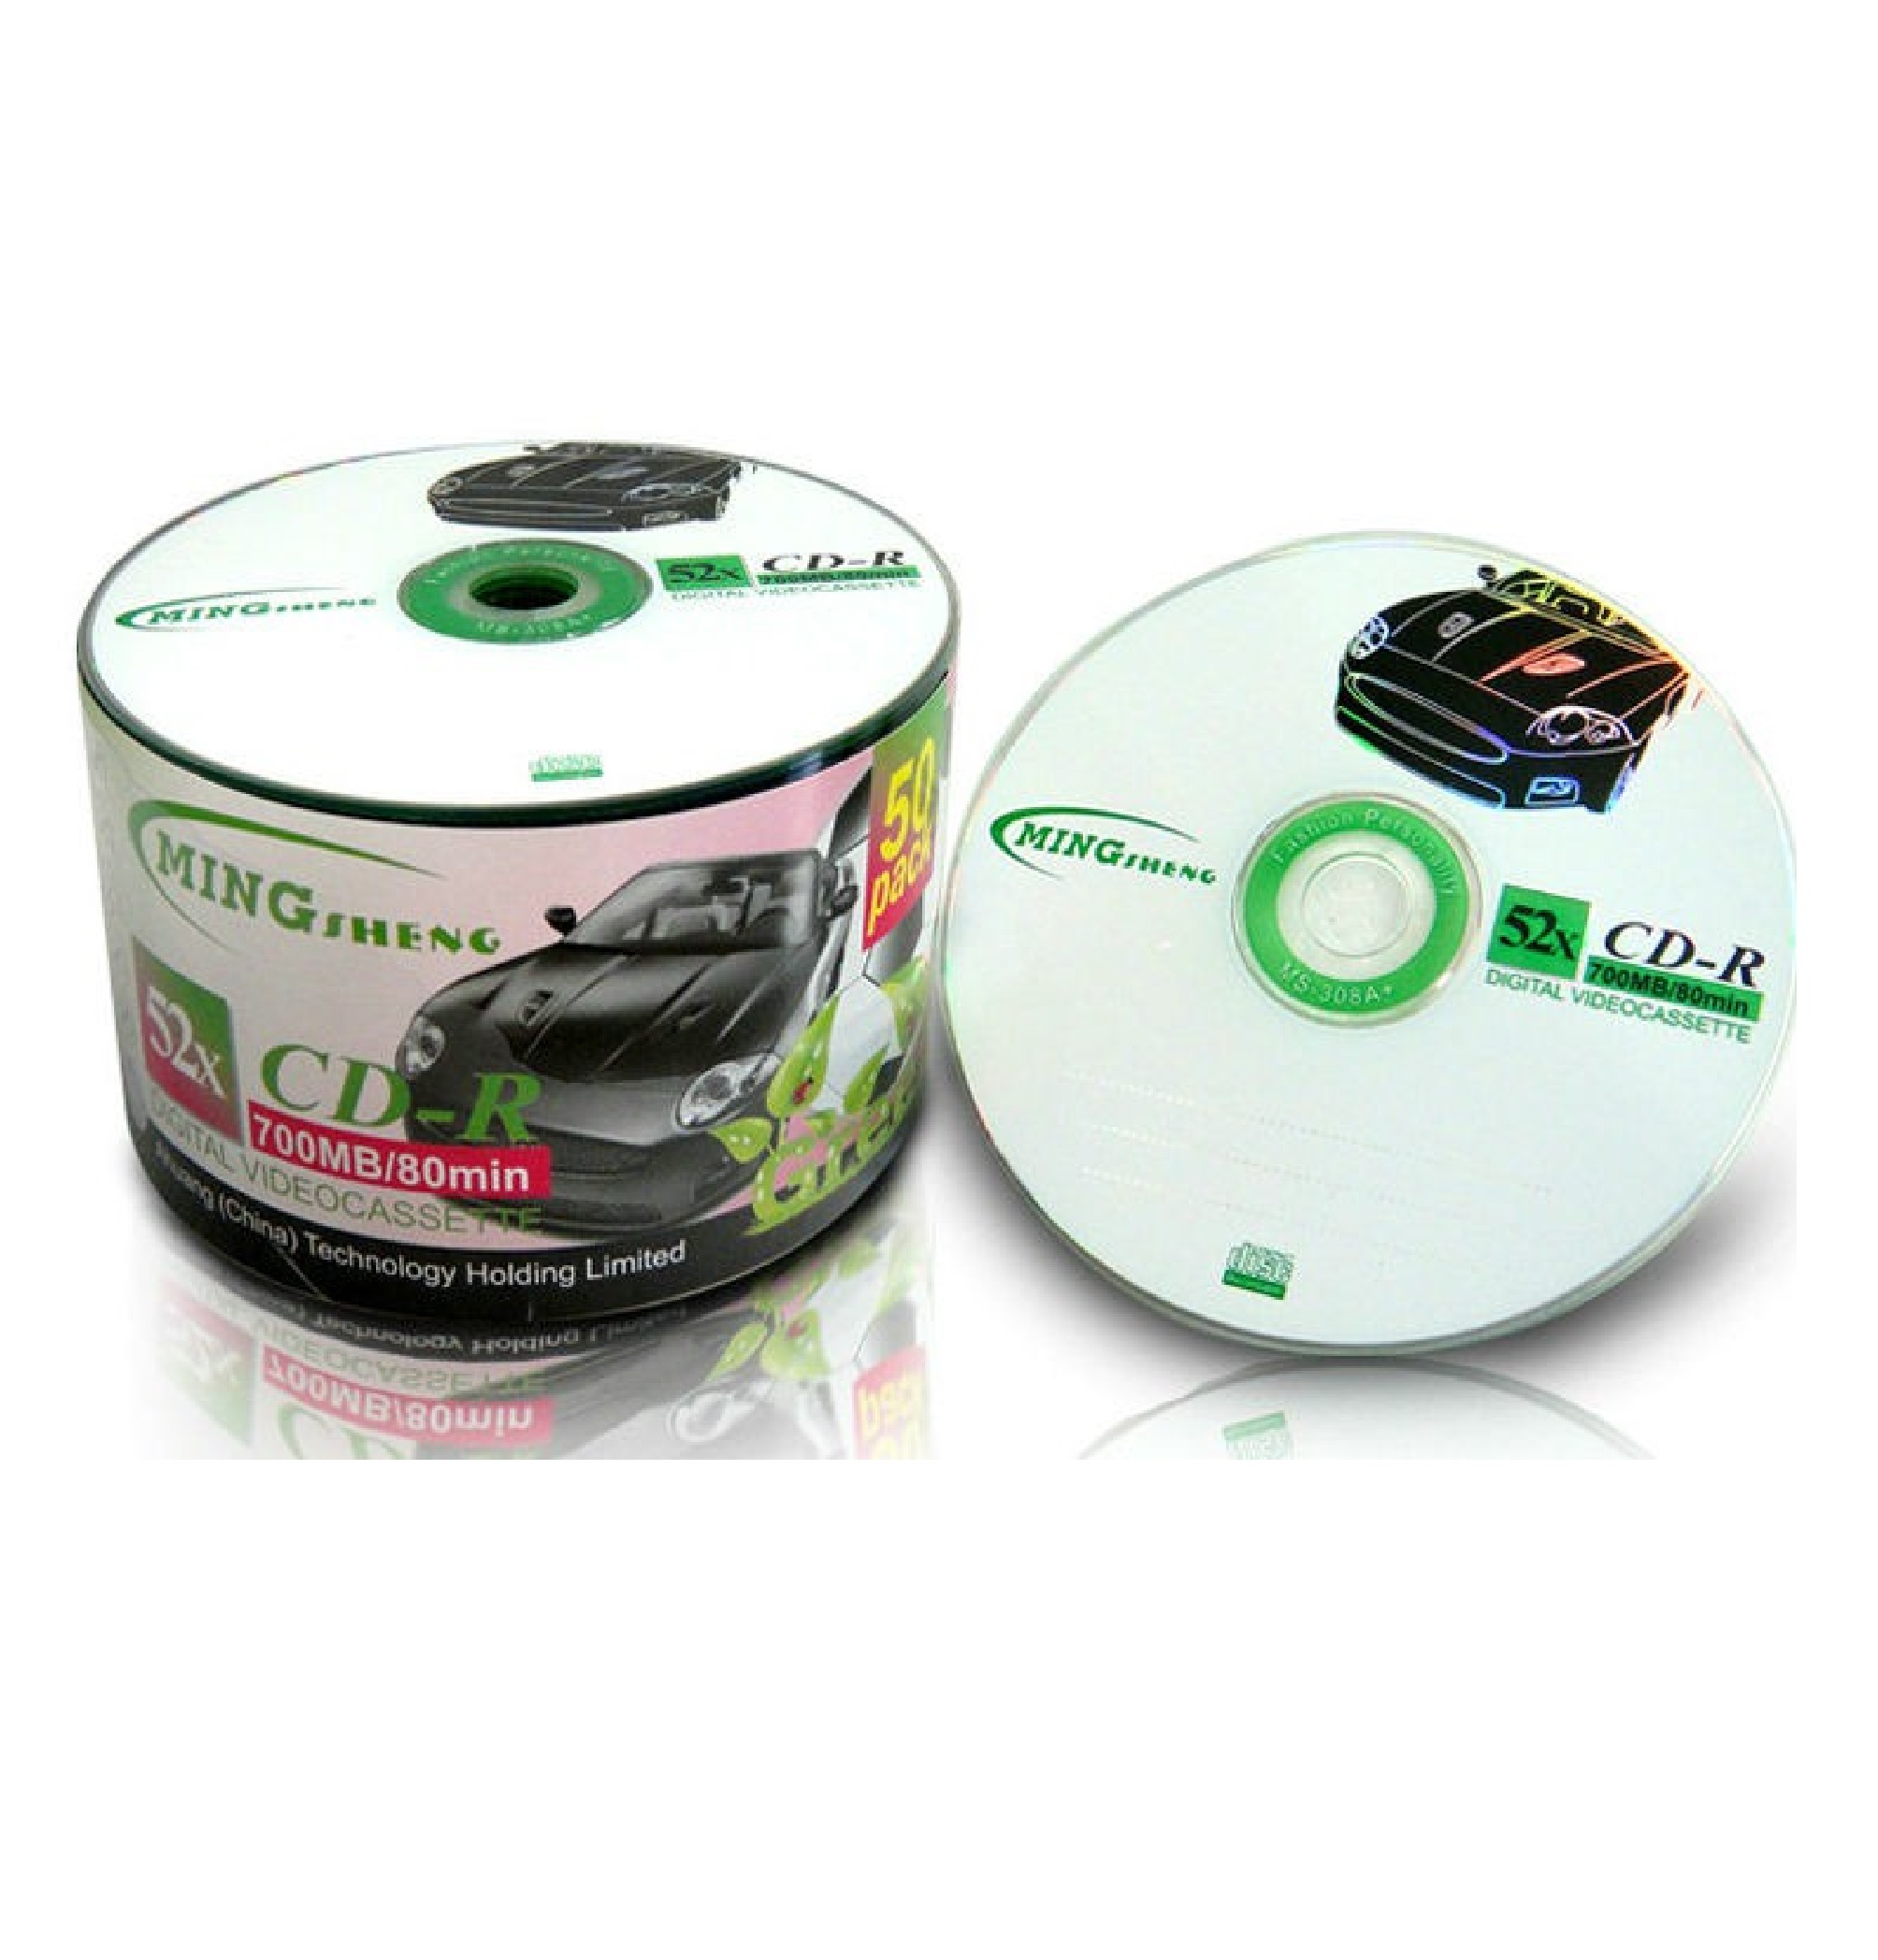 CD trắng MING SHENG 1 lốc 50 đĩa dung lượng 700 MB - Hàng chính hãng